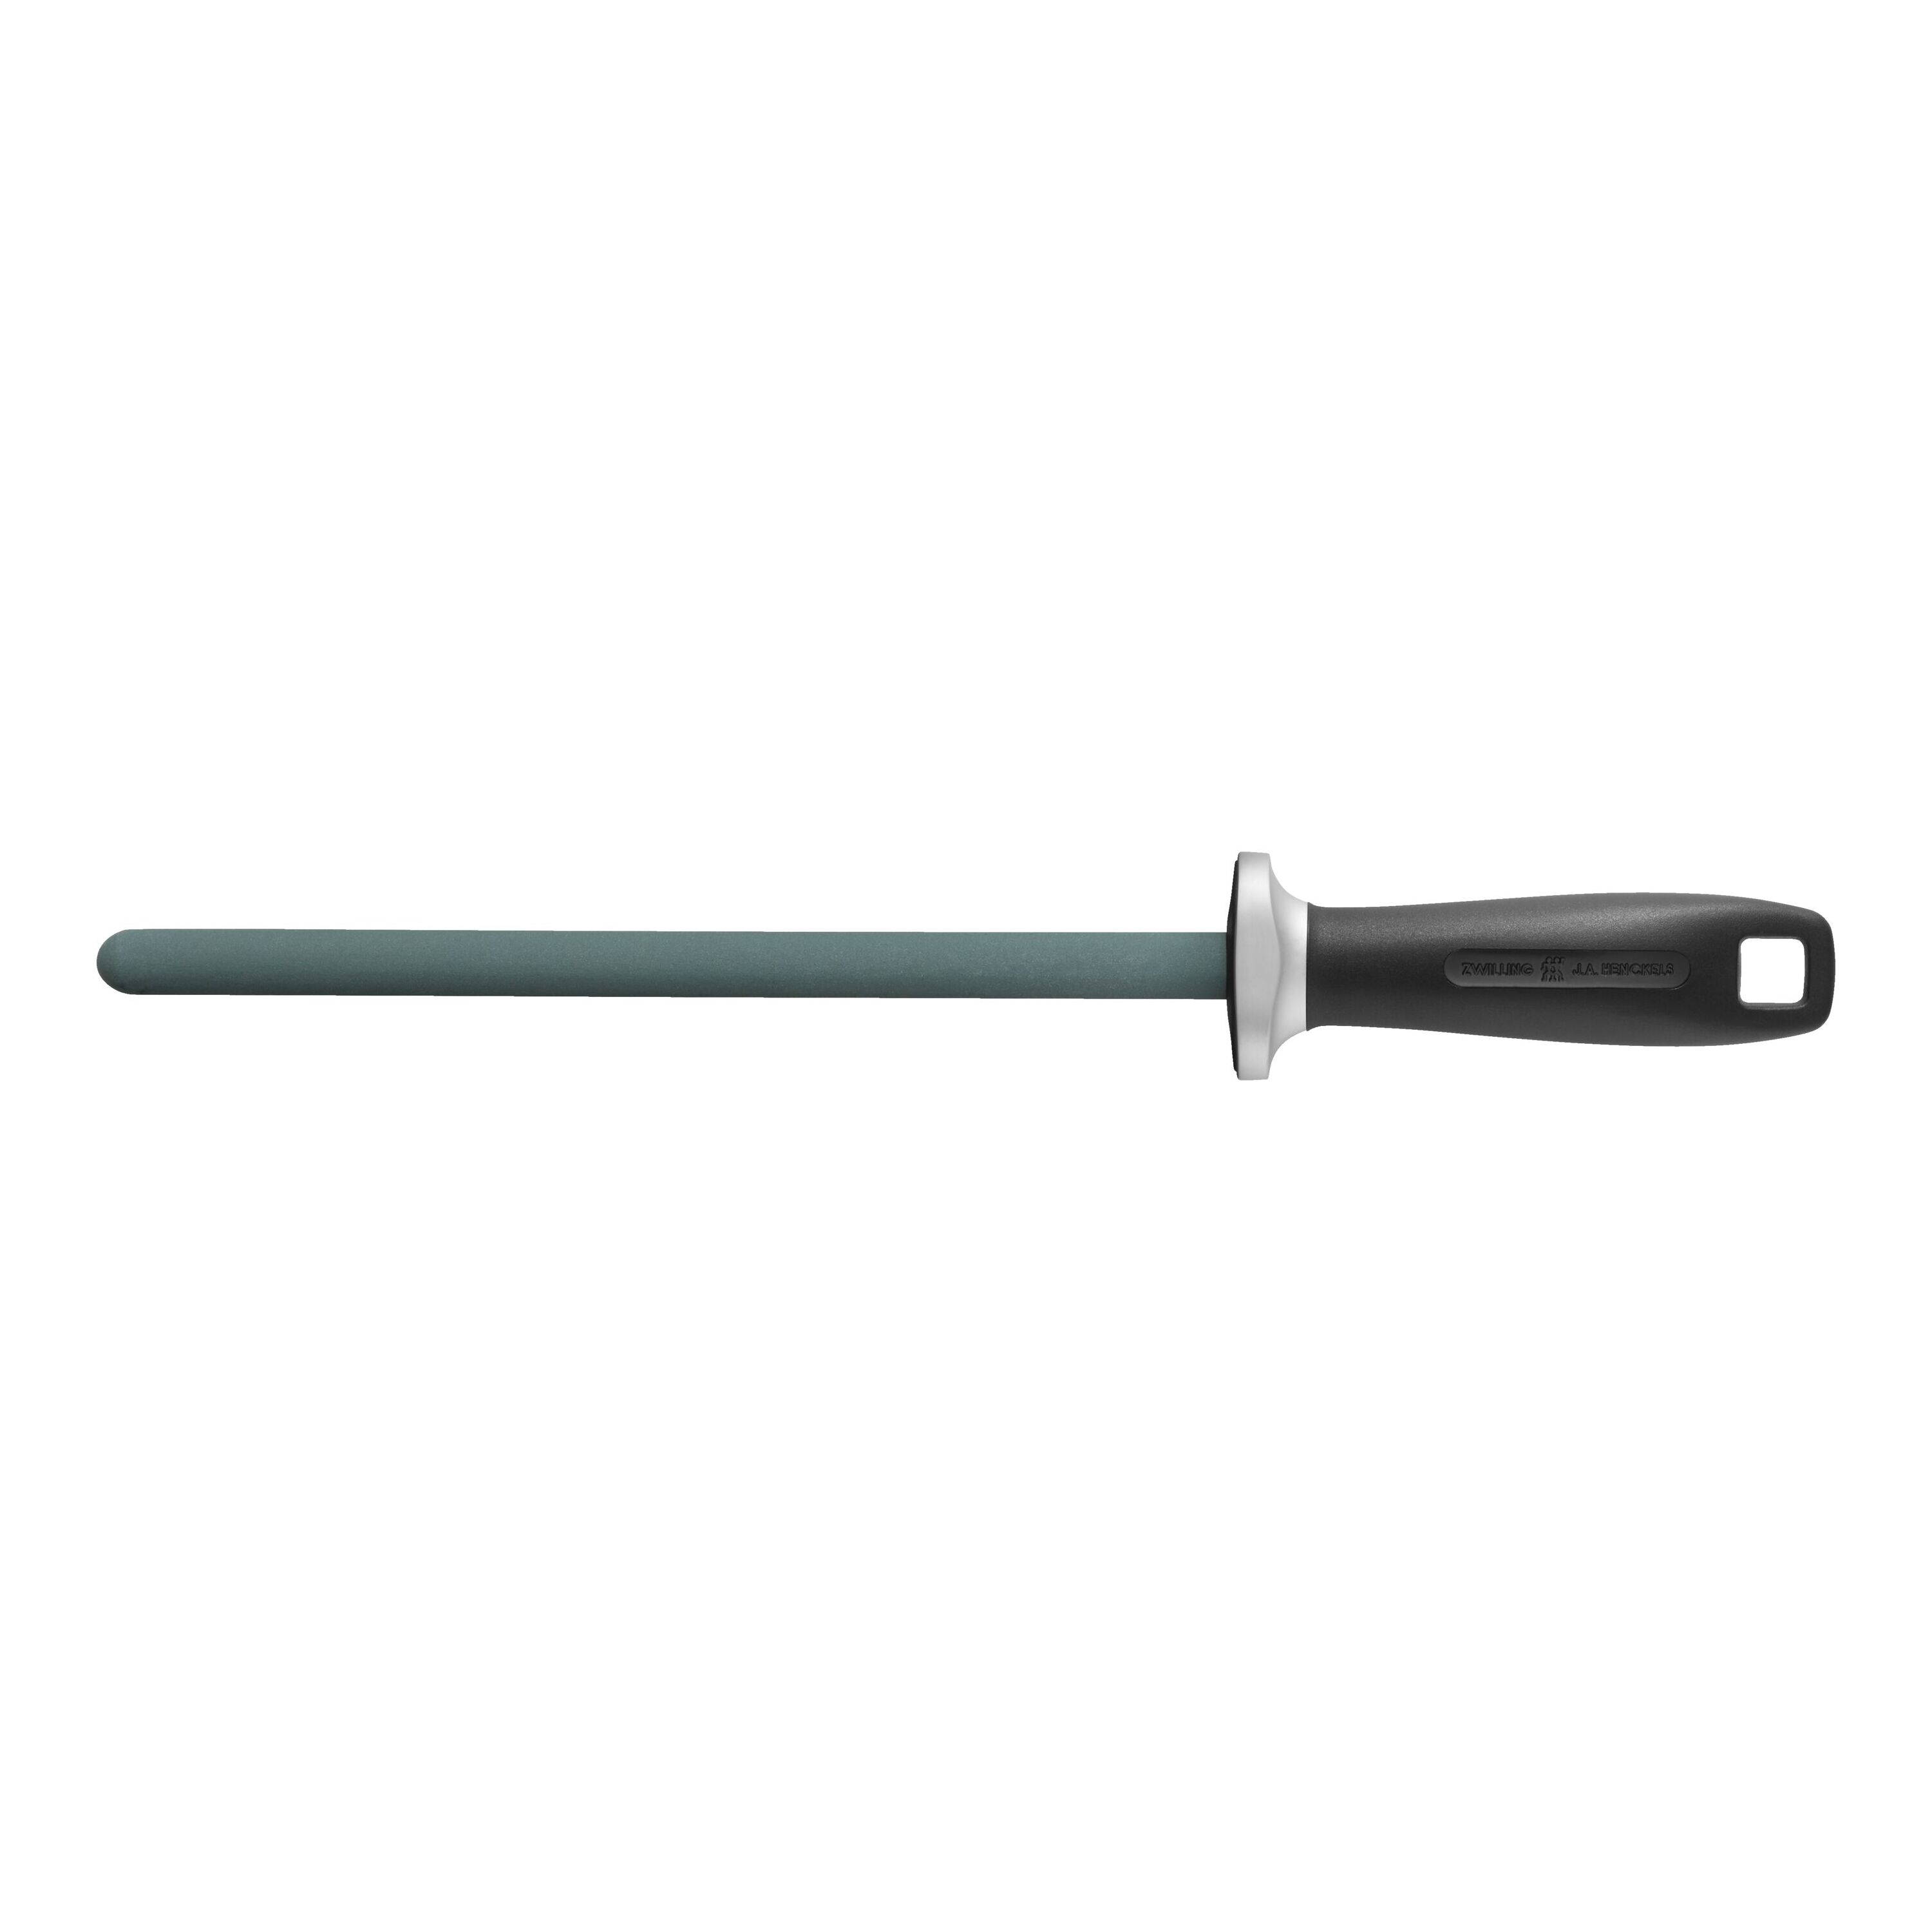 Knife Sharpener Zwilling J.A.Henckels Ceramic Rod 32513-231-0 for sale